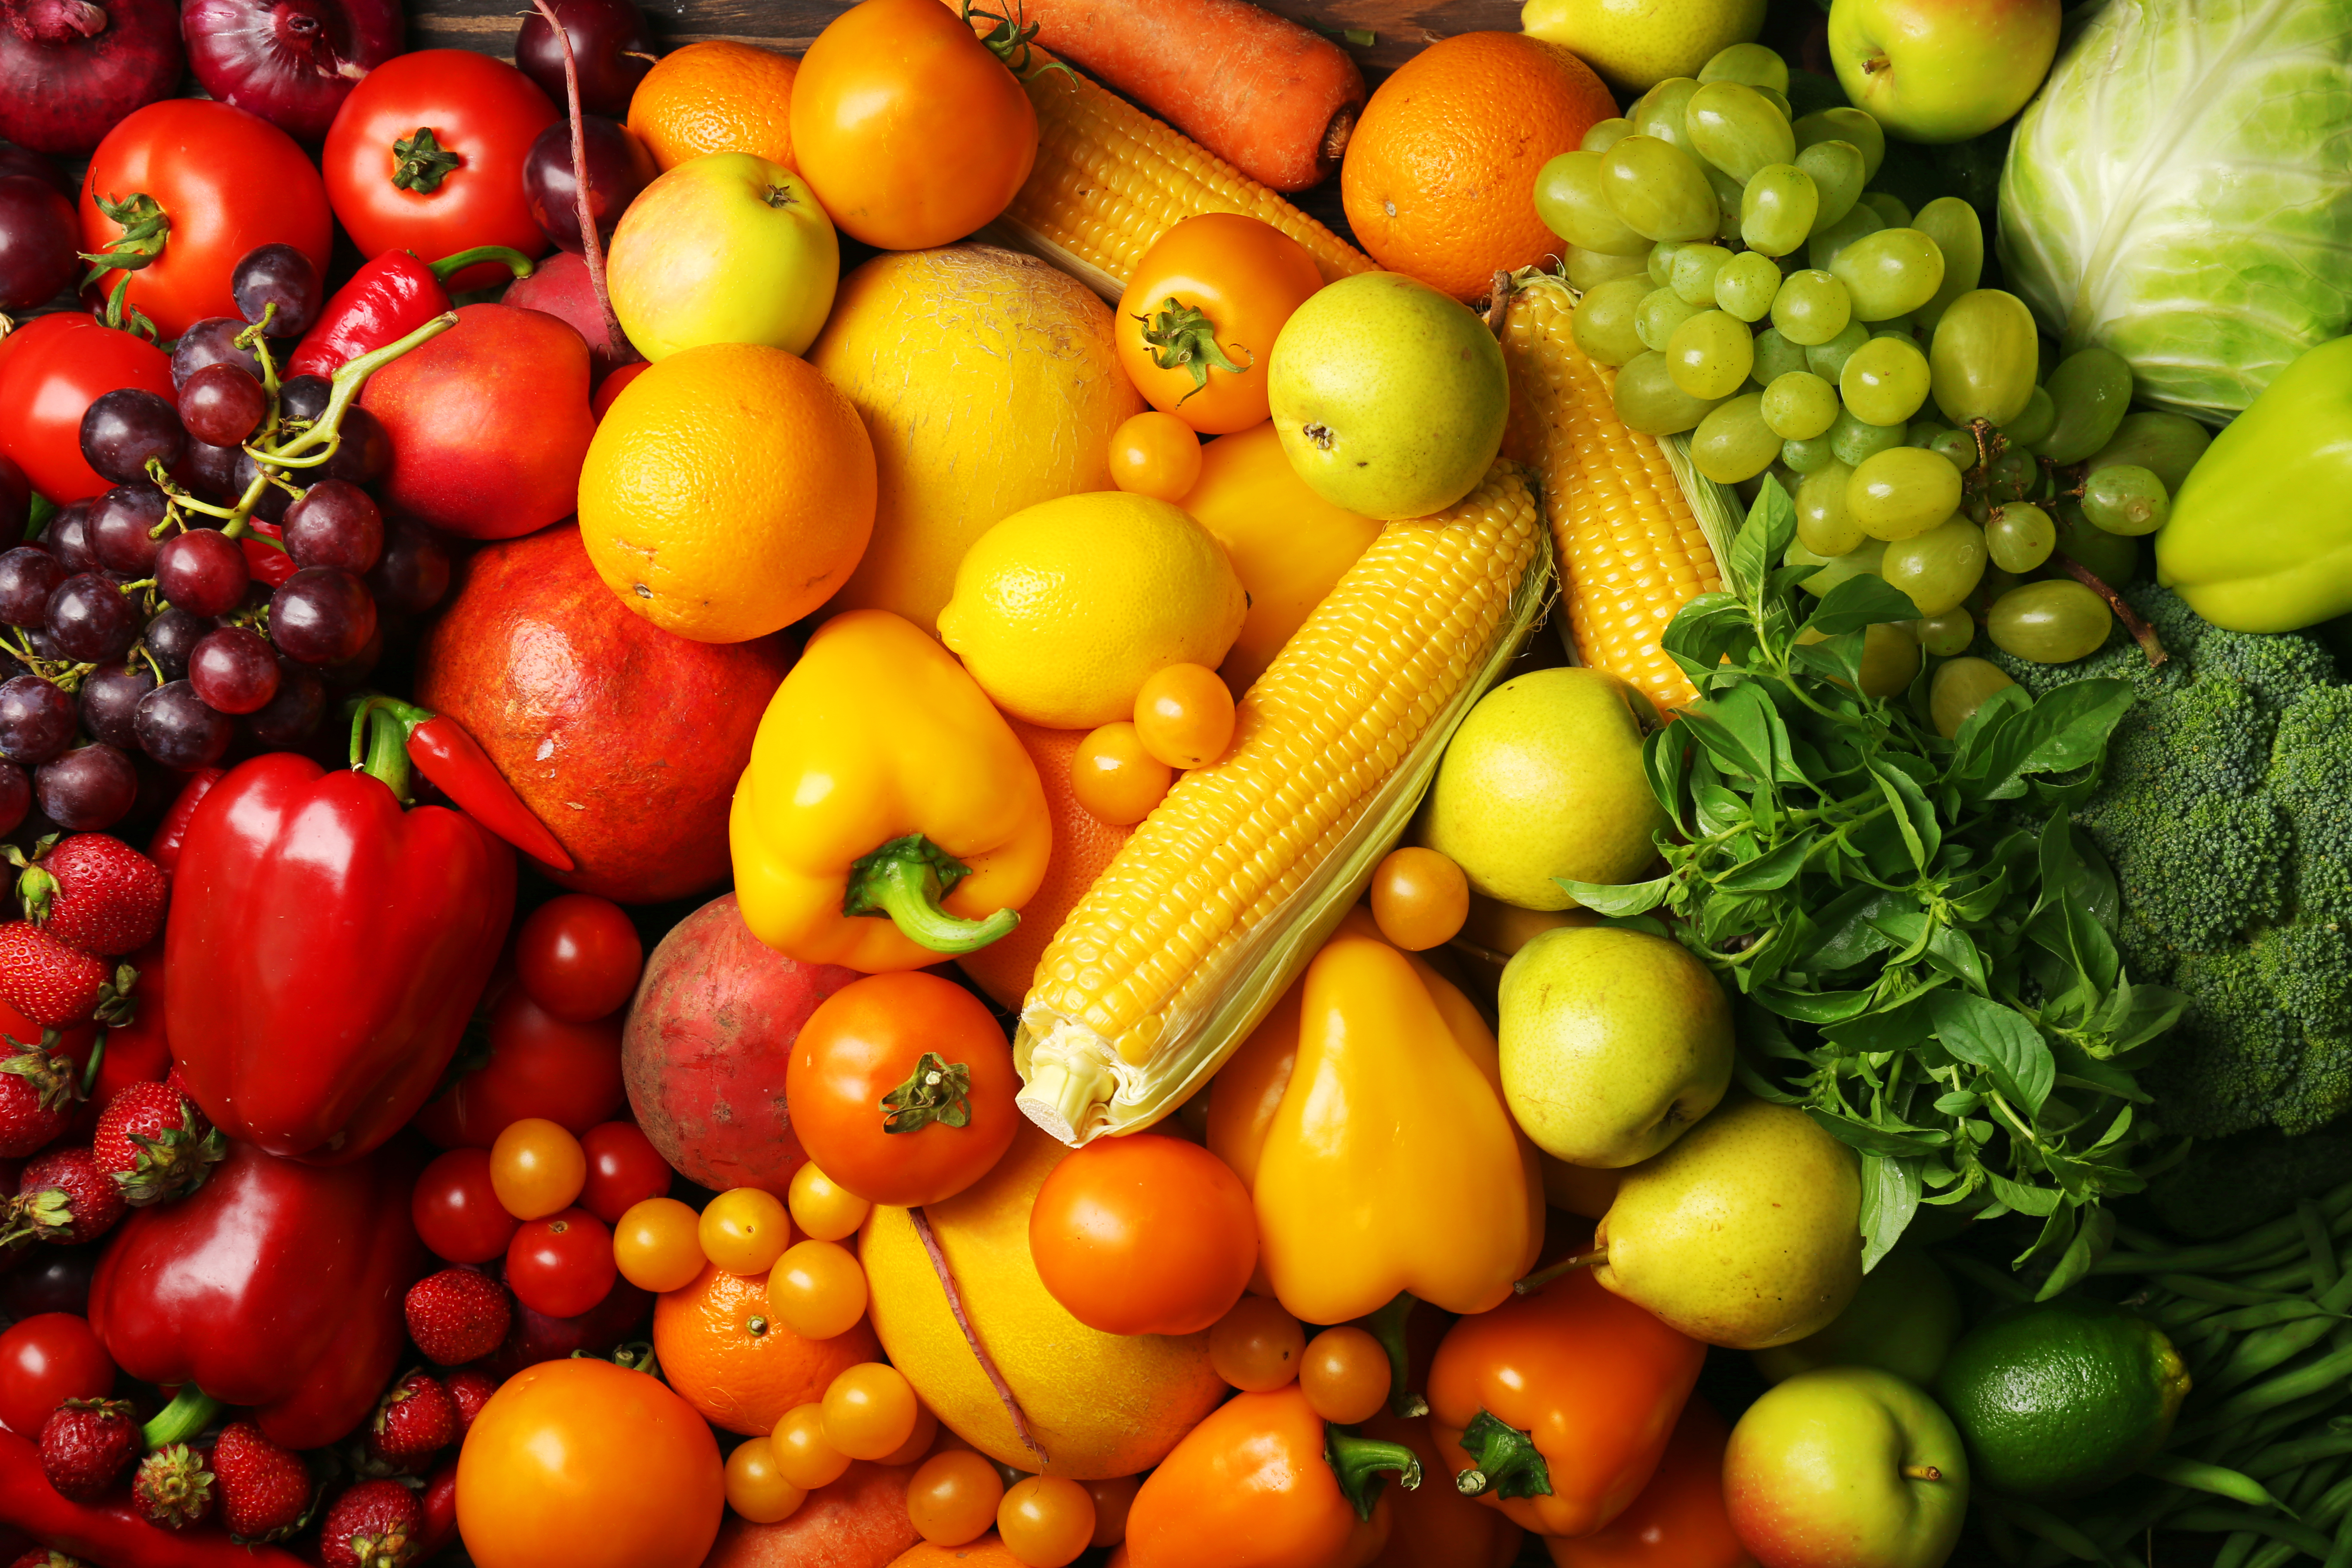 Los colores de las frutas y verduras guardan grandes valores nutricionales. (Foto Prensa Libre: Shutterstock)